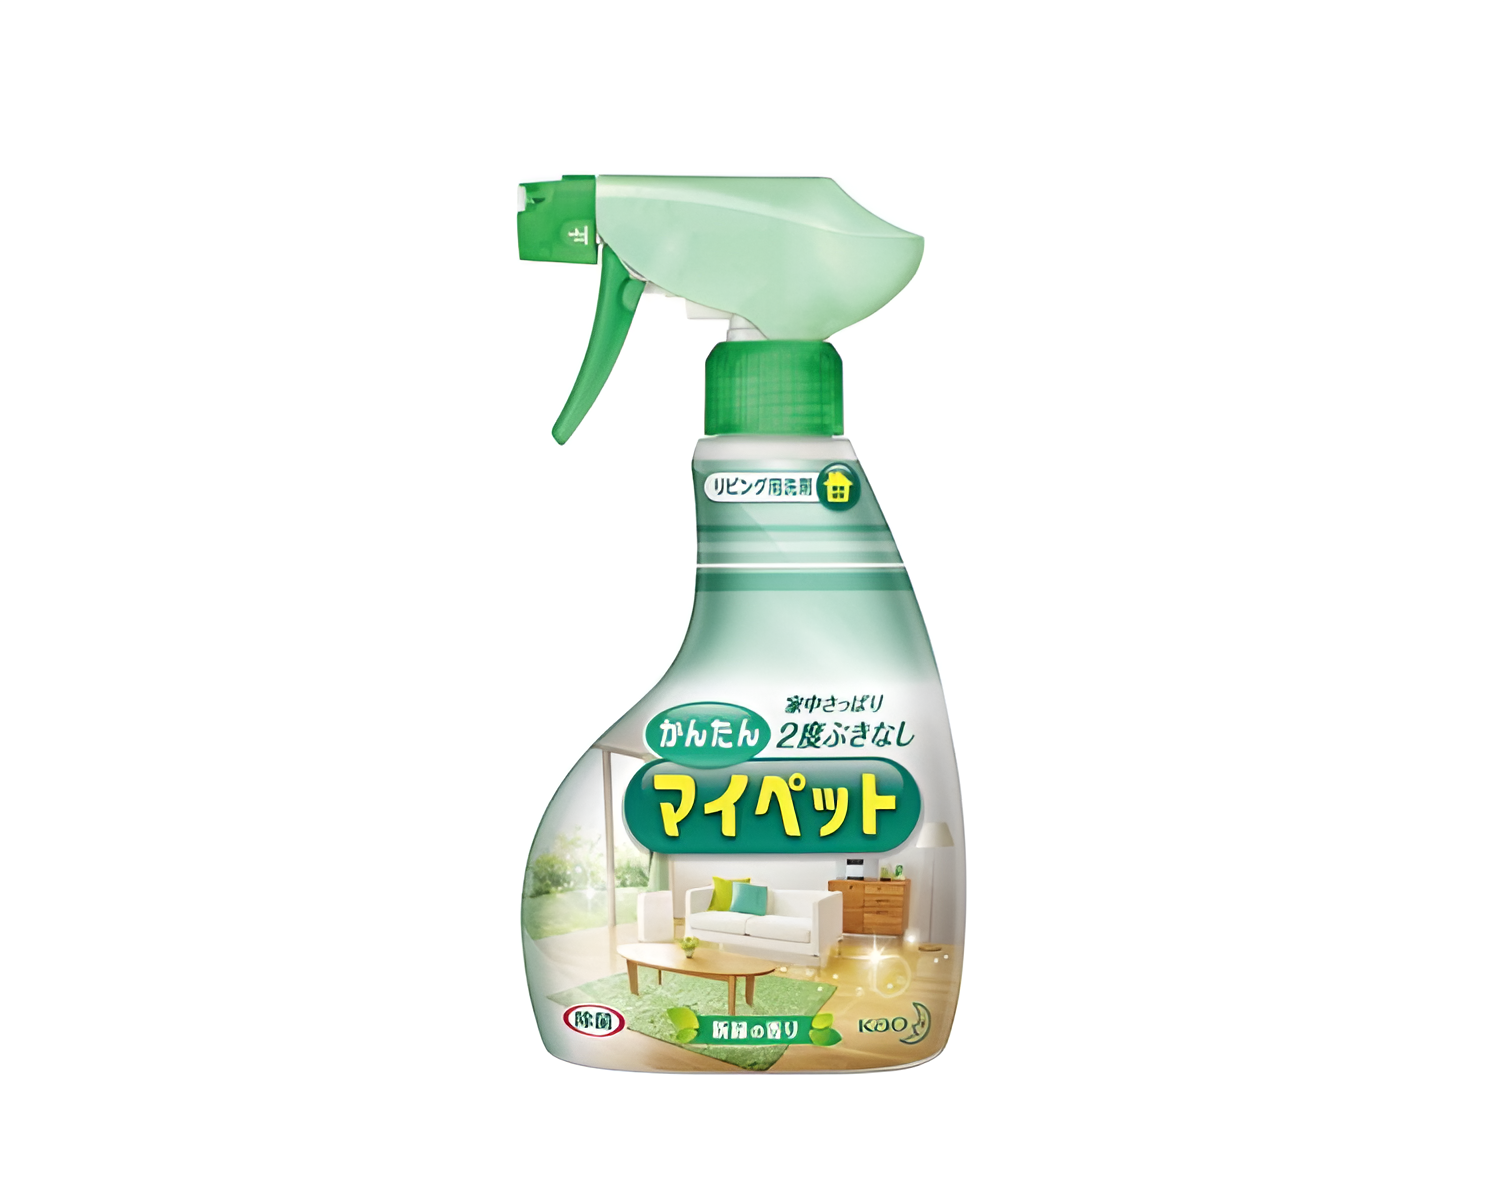 Kao Easy My Pet Спрей чистящий универсальный антибактериальный с ароматом свежей зелени 400 мл